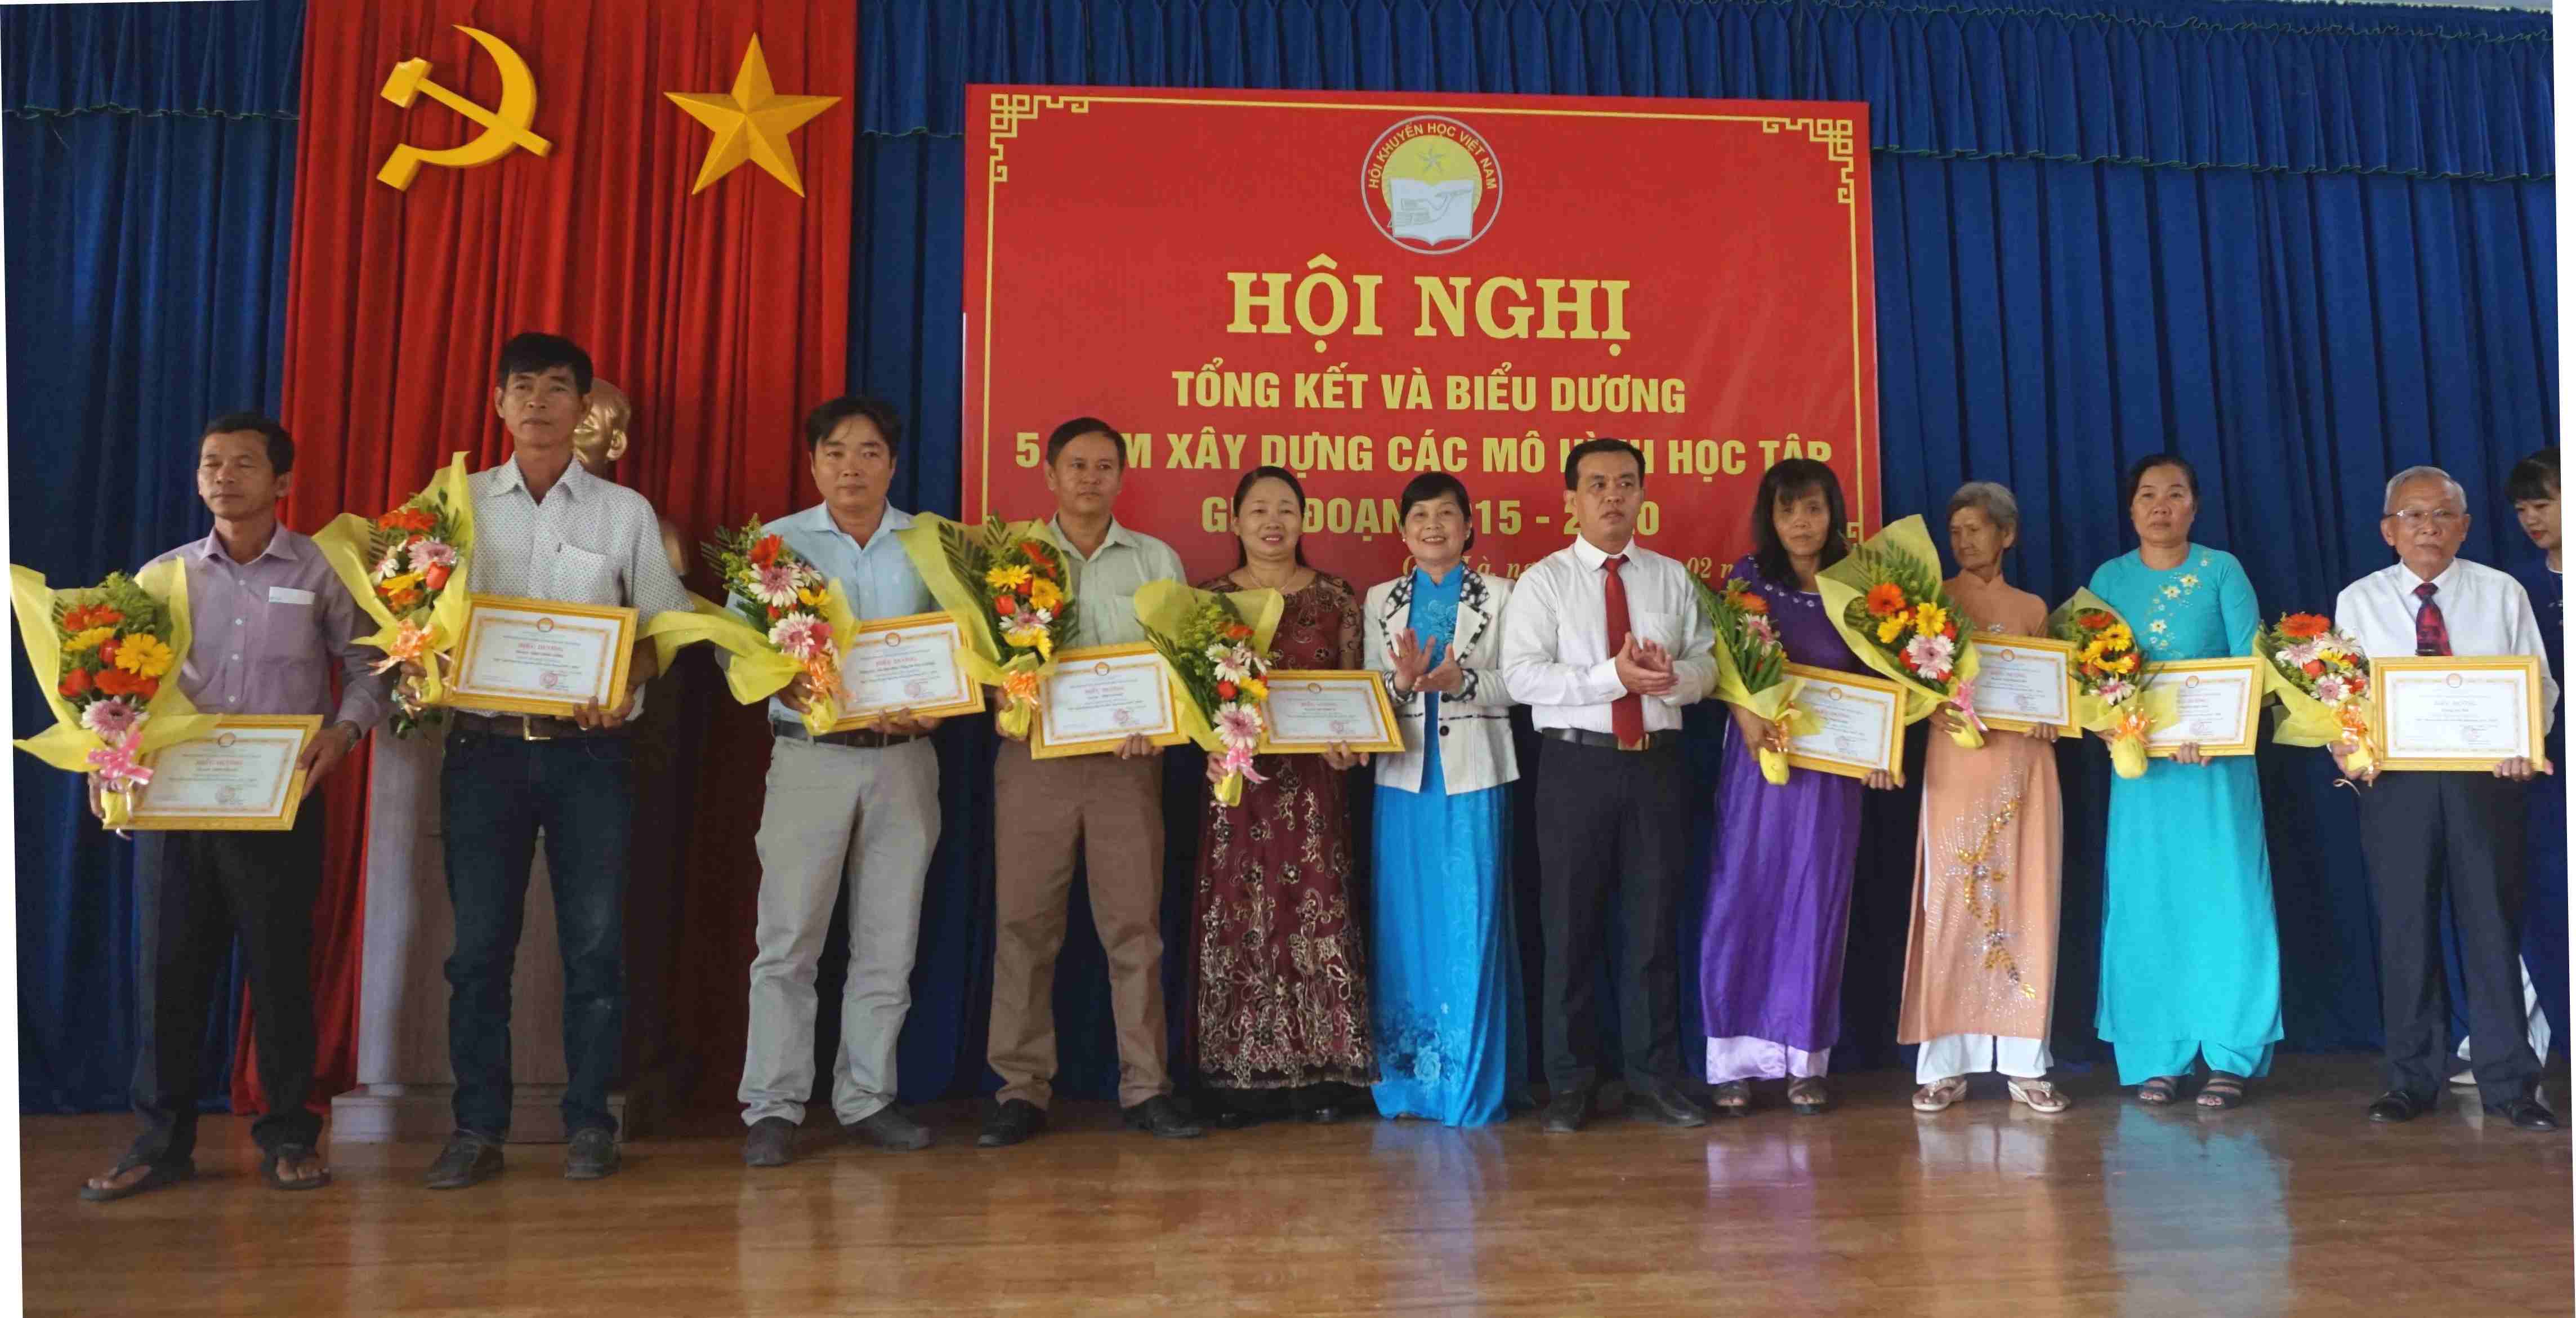 Xã Chà Là, huyện Dương Minh Châu Tổng kết và biểu dương 05 năm xây dựng các mô hình học tập giai đoạn 2015-2020